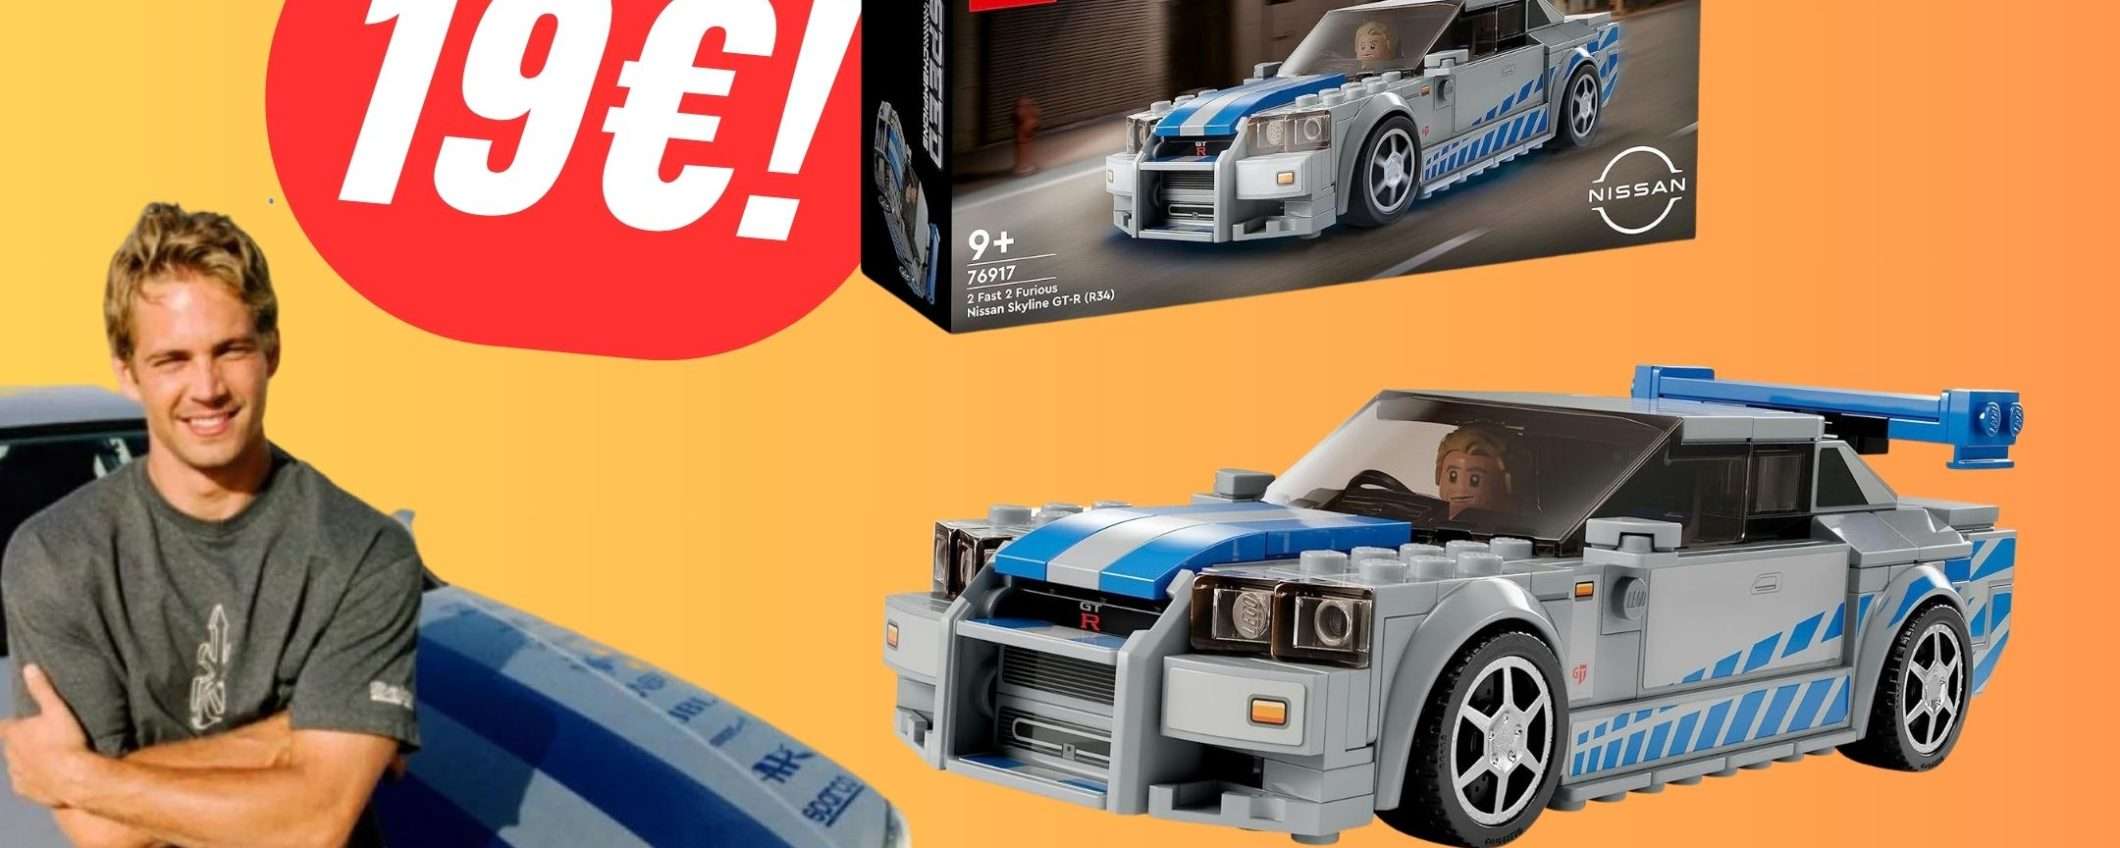 L'iconica LEGO Nissan Skyline GT-R di Paul Walker è scontata su Amazon!